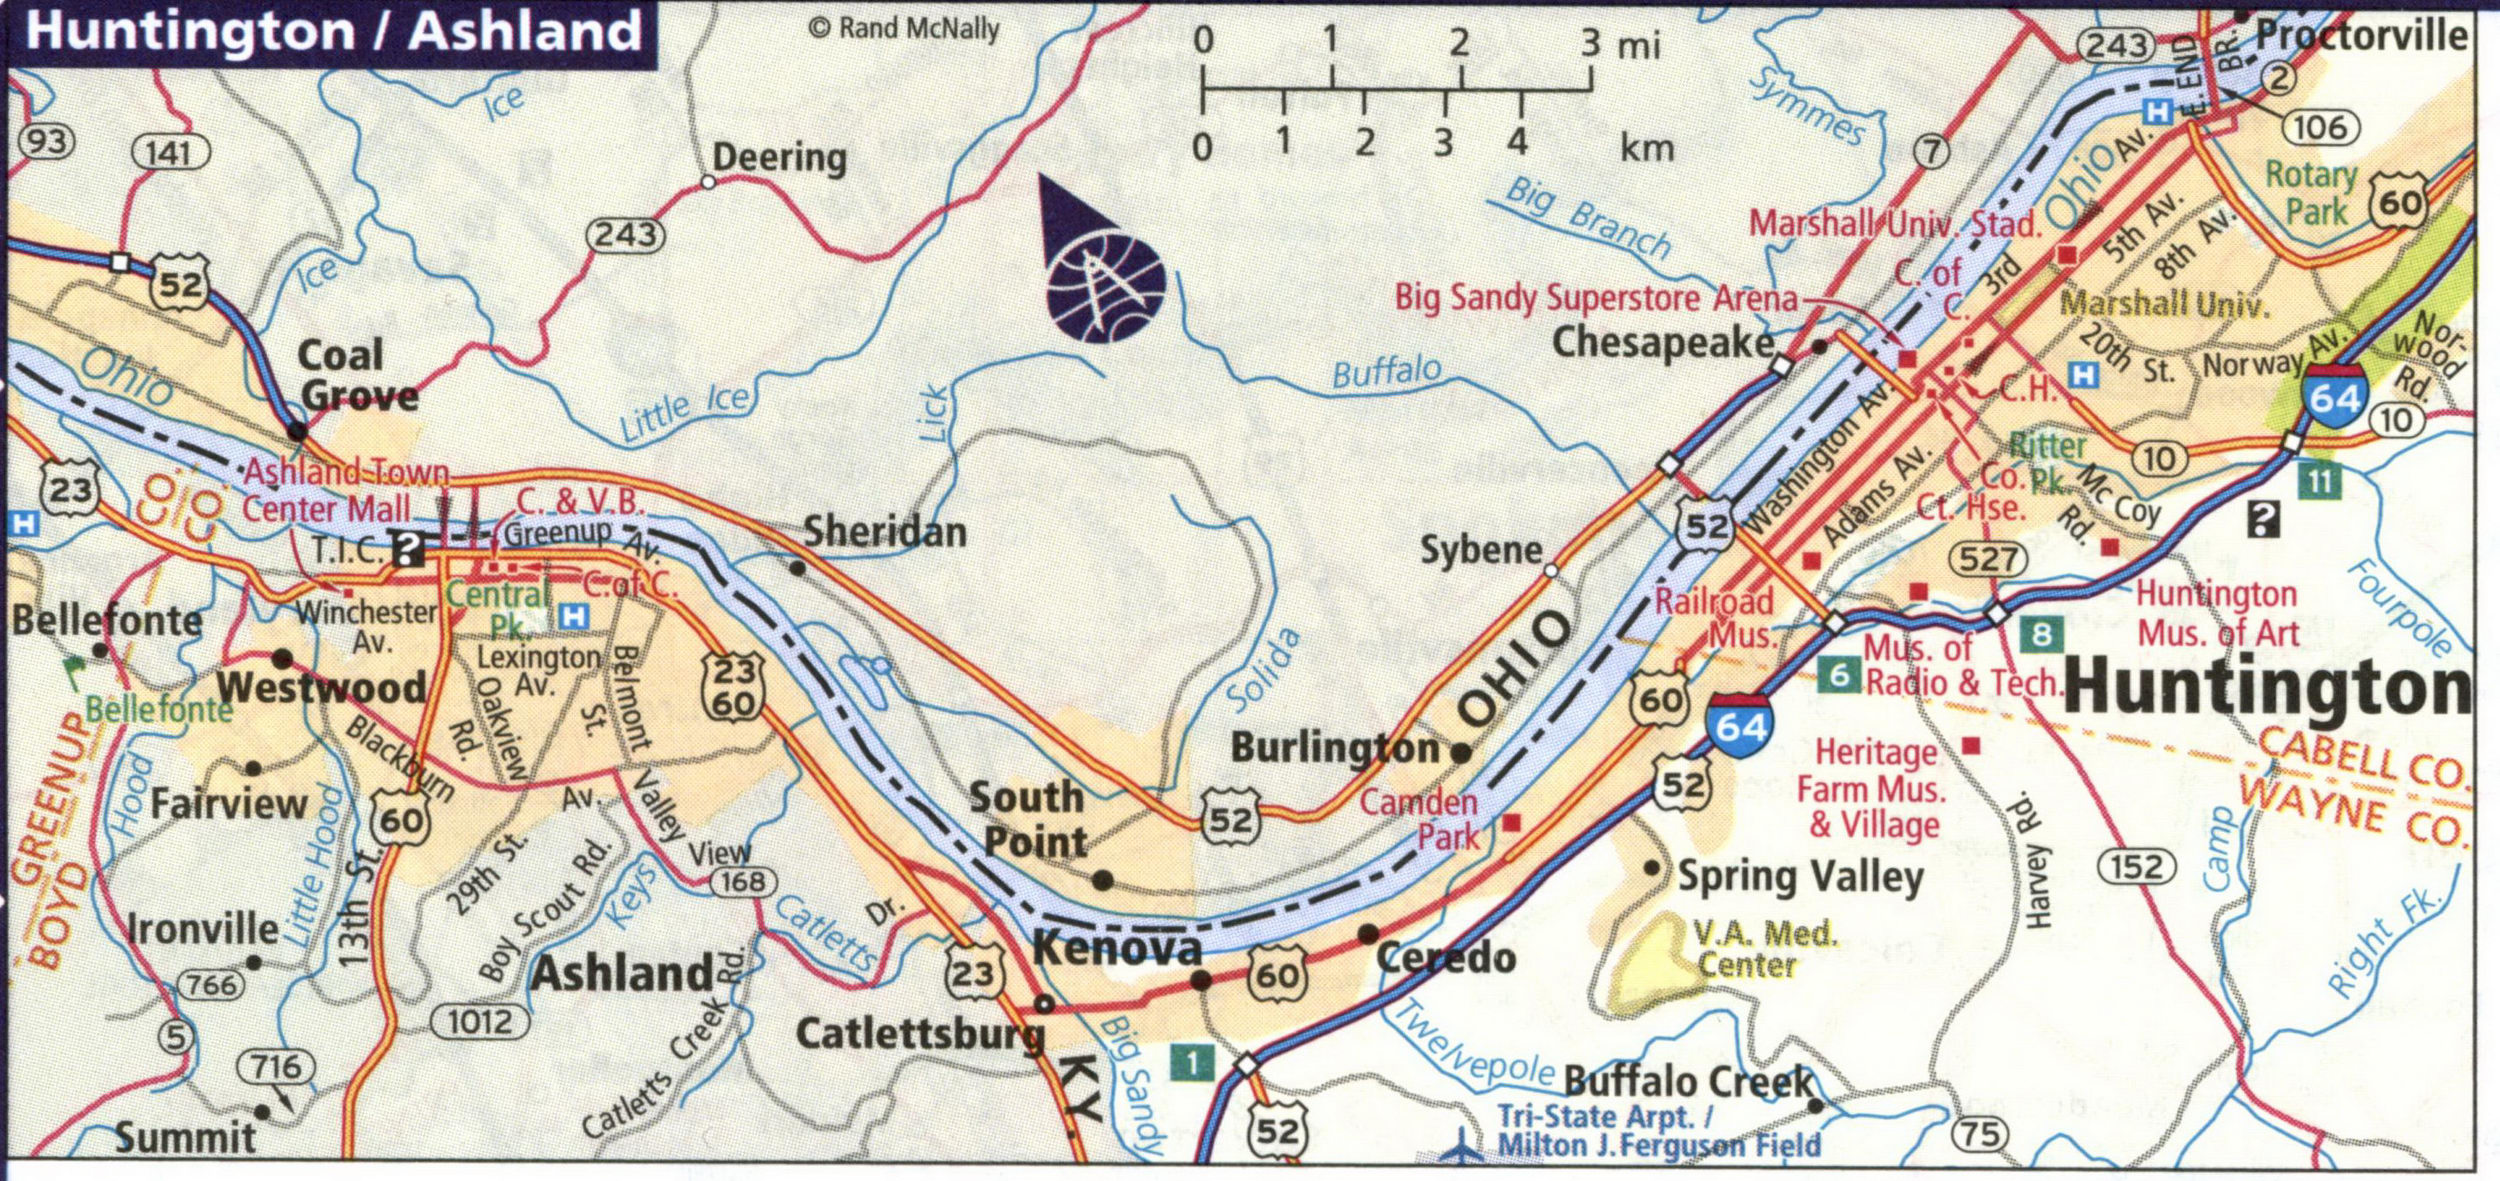 Map of Hantington city and Ashland city